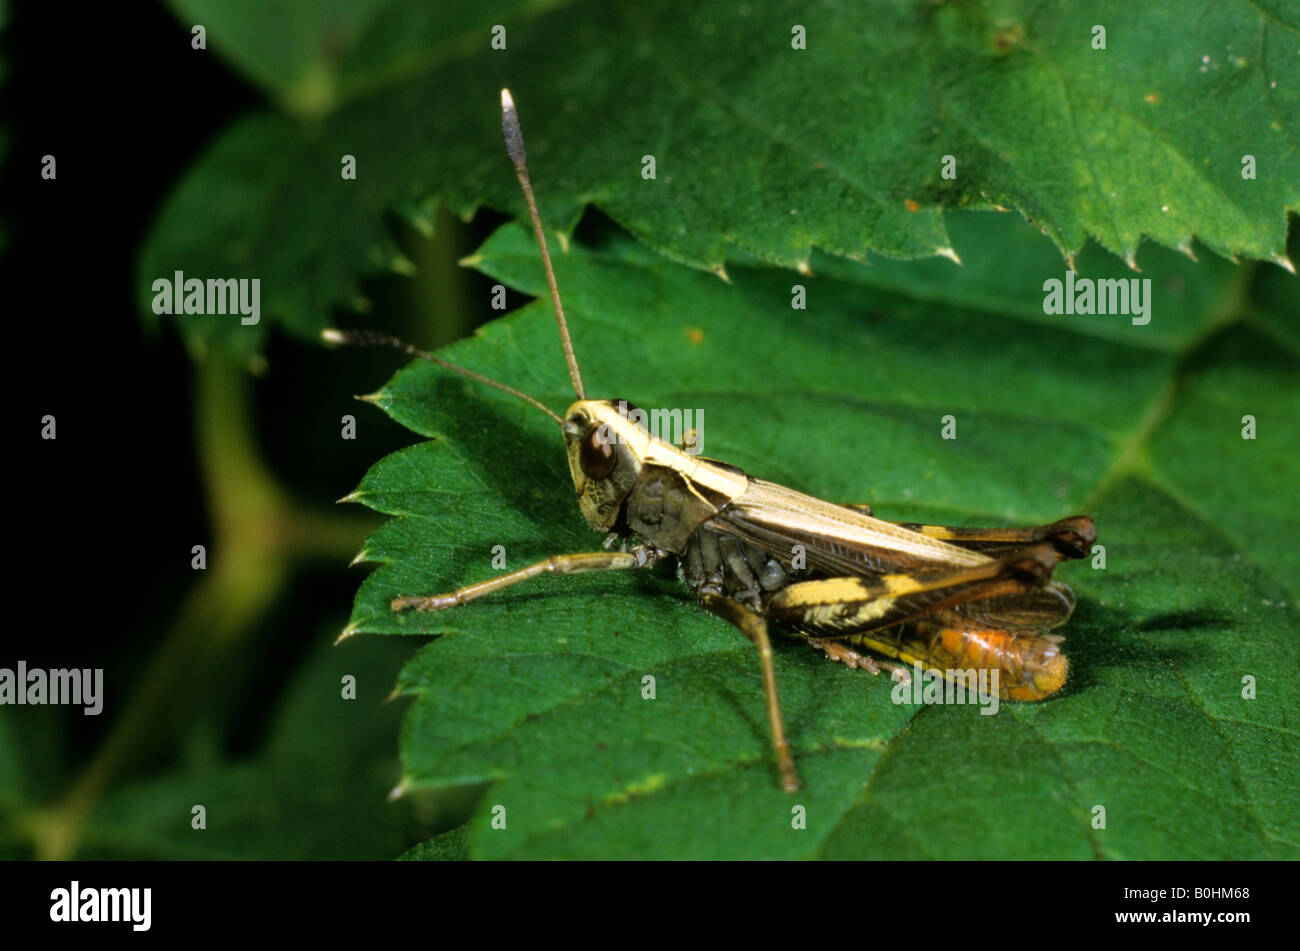 Bruant sauterelle (mâle) Gomphocerus rufus perché sur une feuille verte Banque D'Images